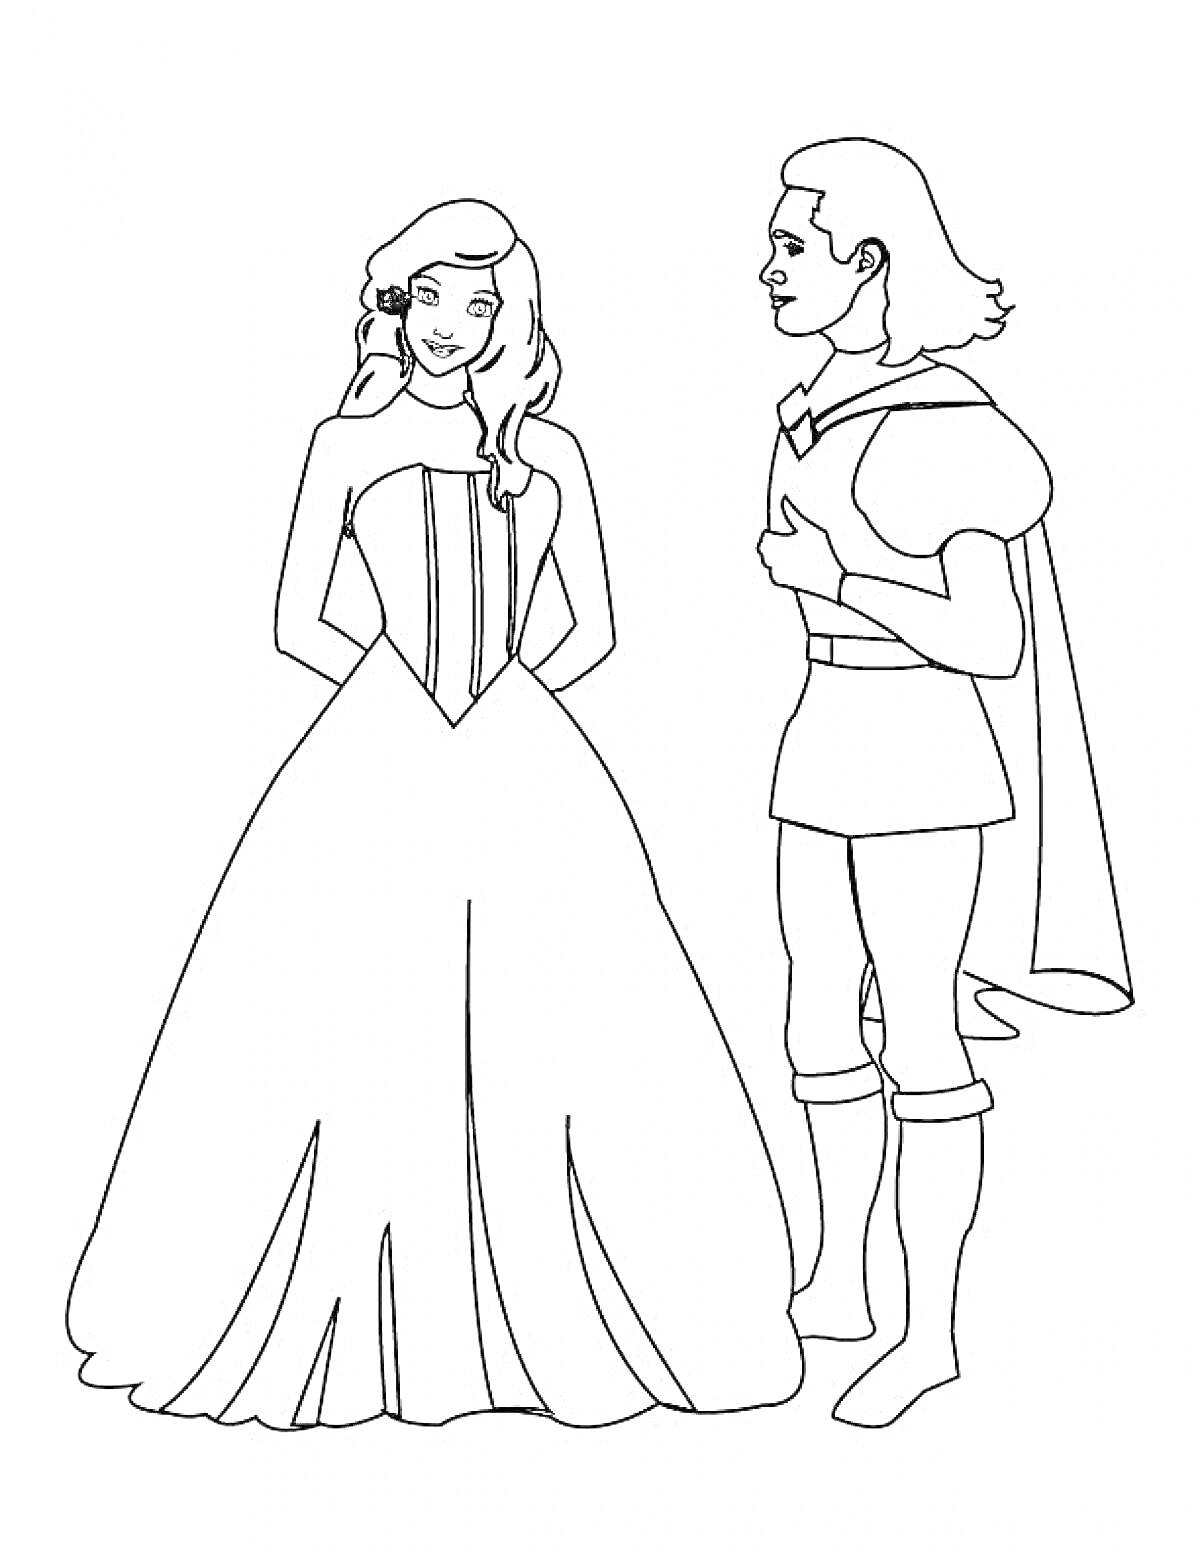 Раскраска Принц и принцесса стоят вместе